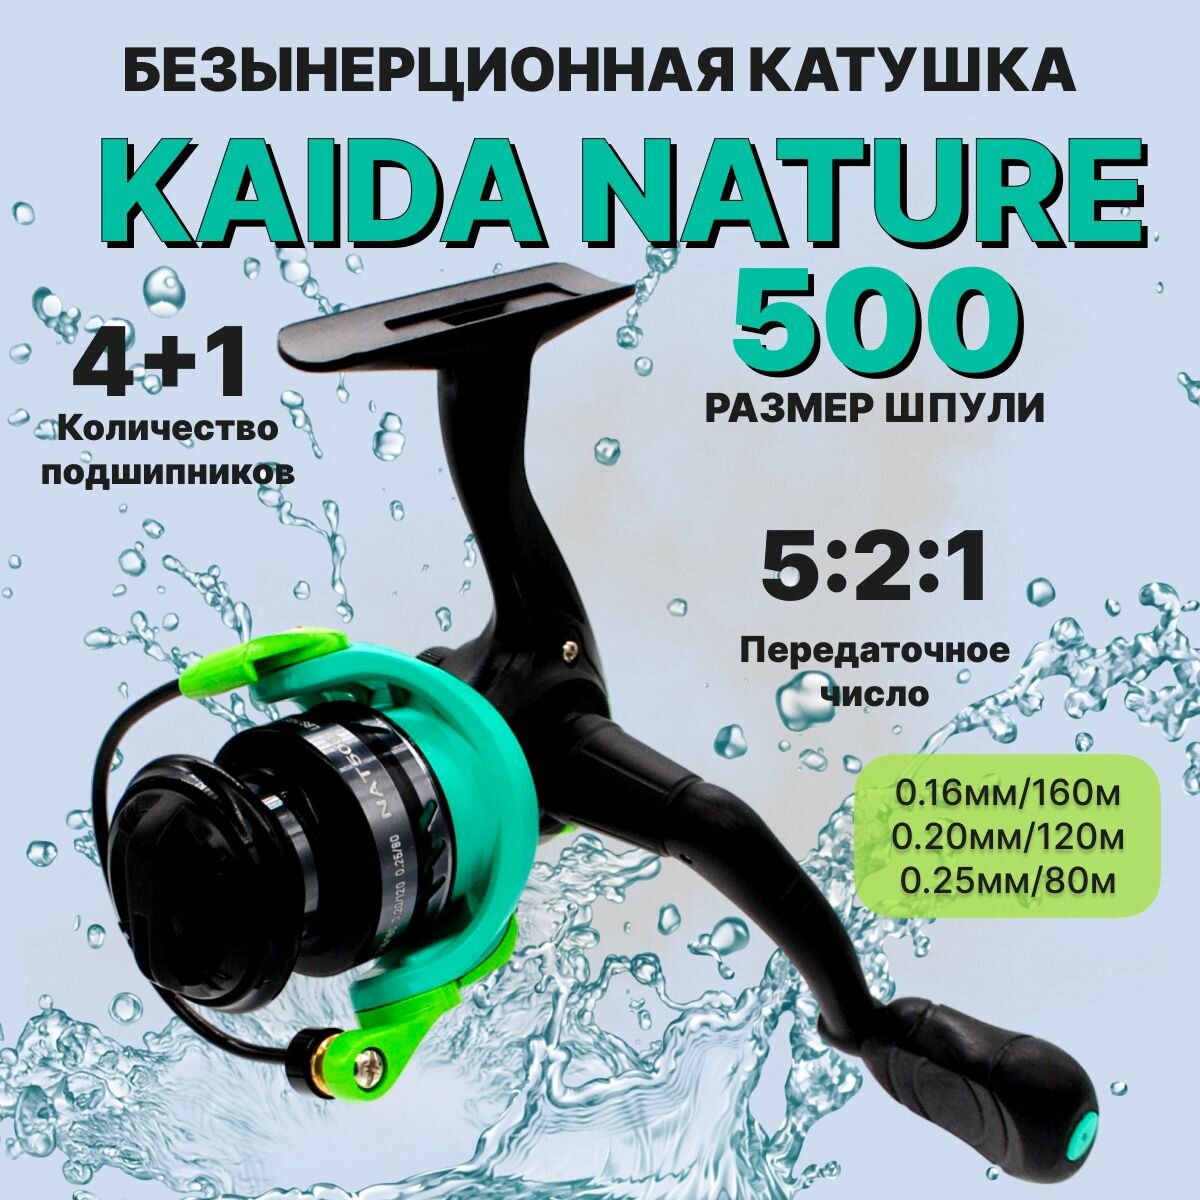 Катушка для рыбалки KAIDA NATURE 500 4+1